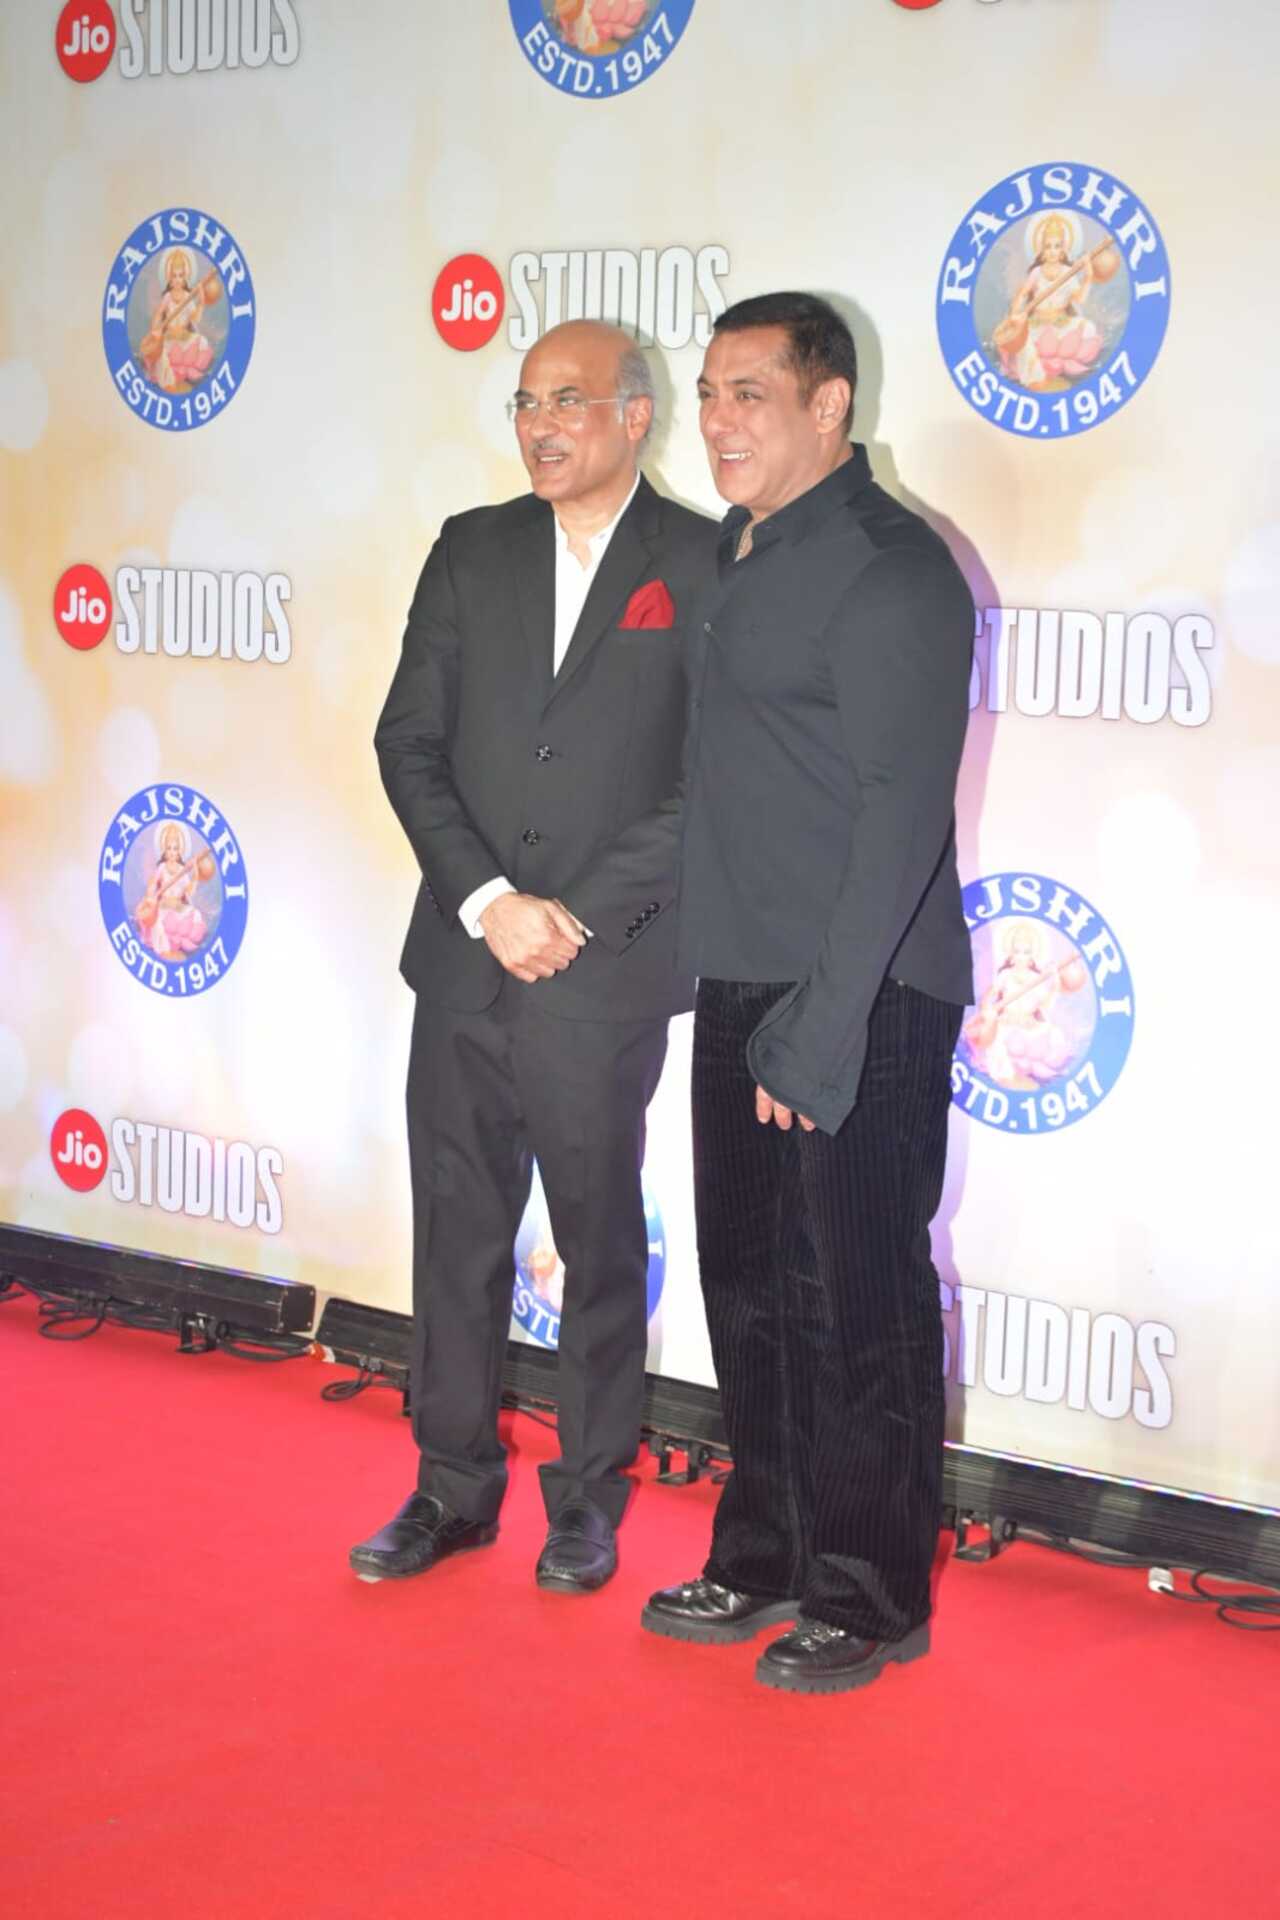 Salman Khan posed with Sooraj Barjatya, with whom he started his career as a lead actor